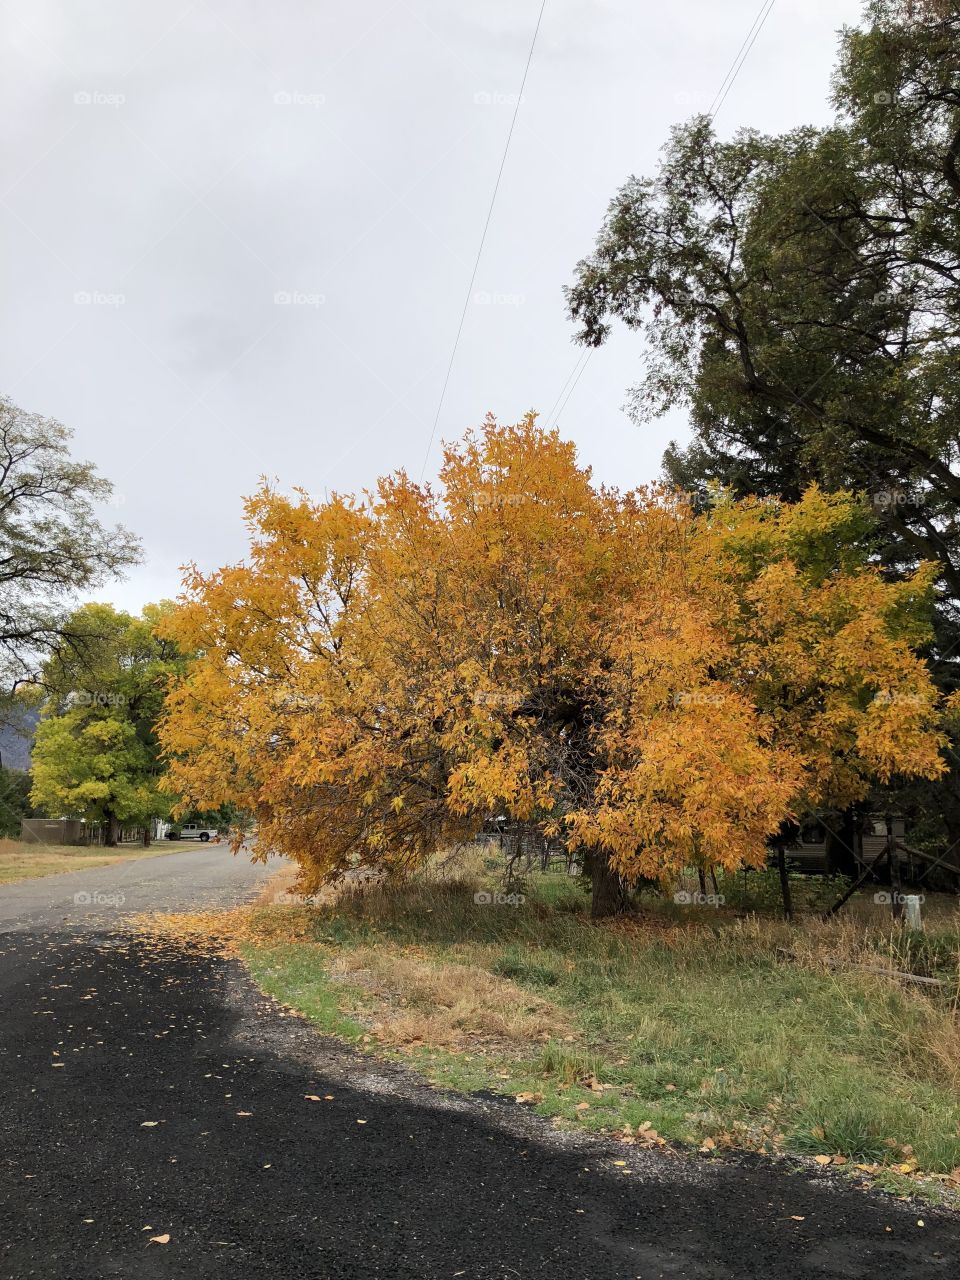 Fall in Utah